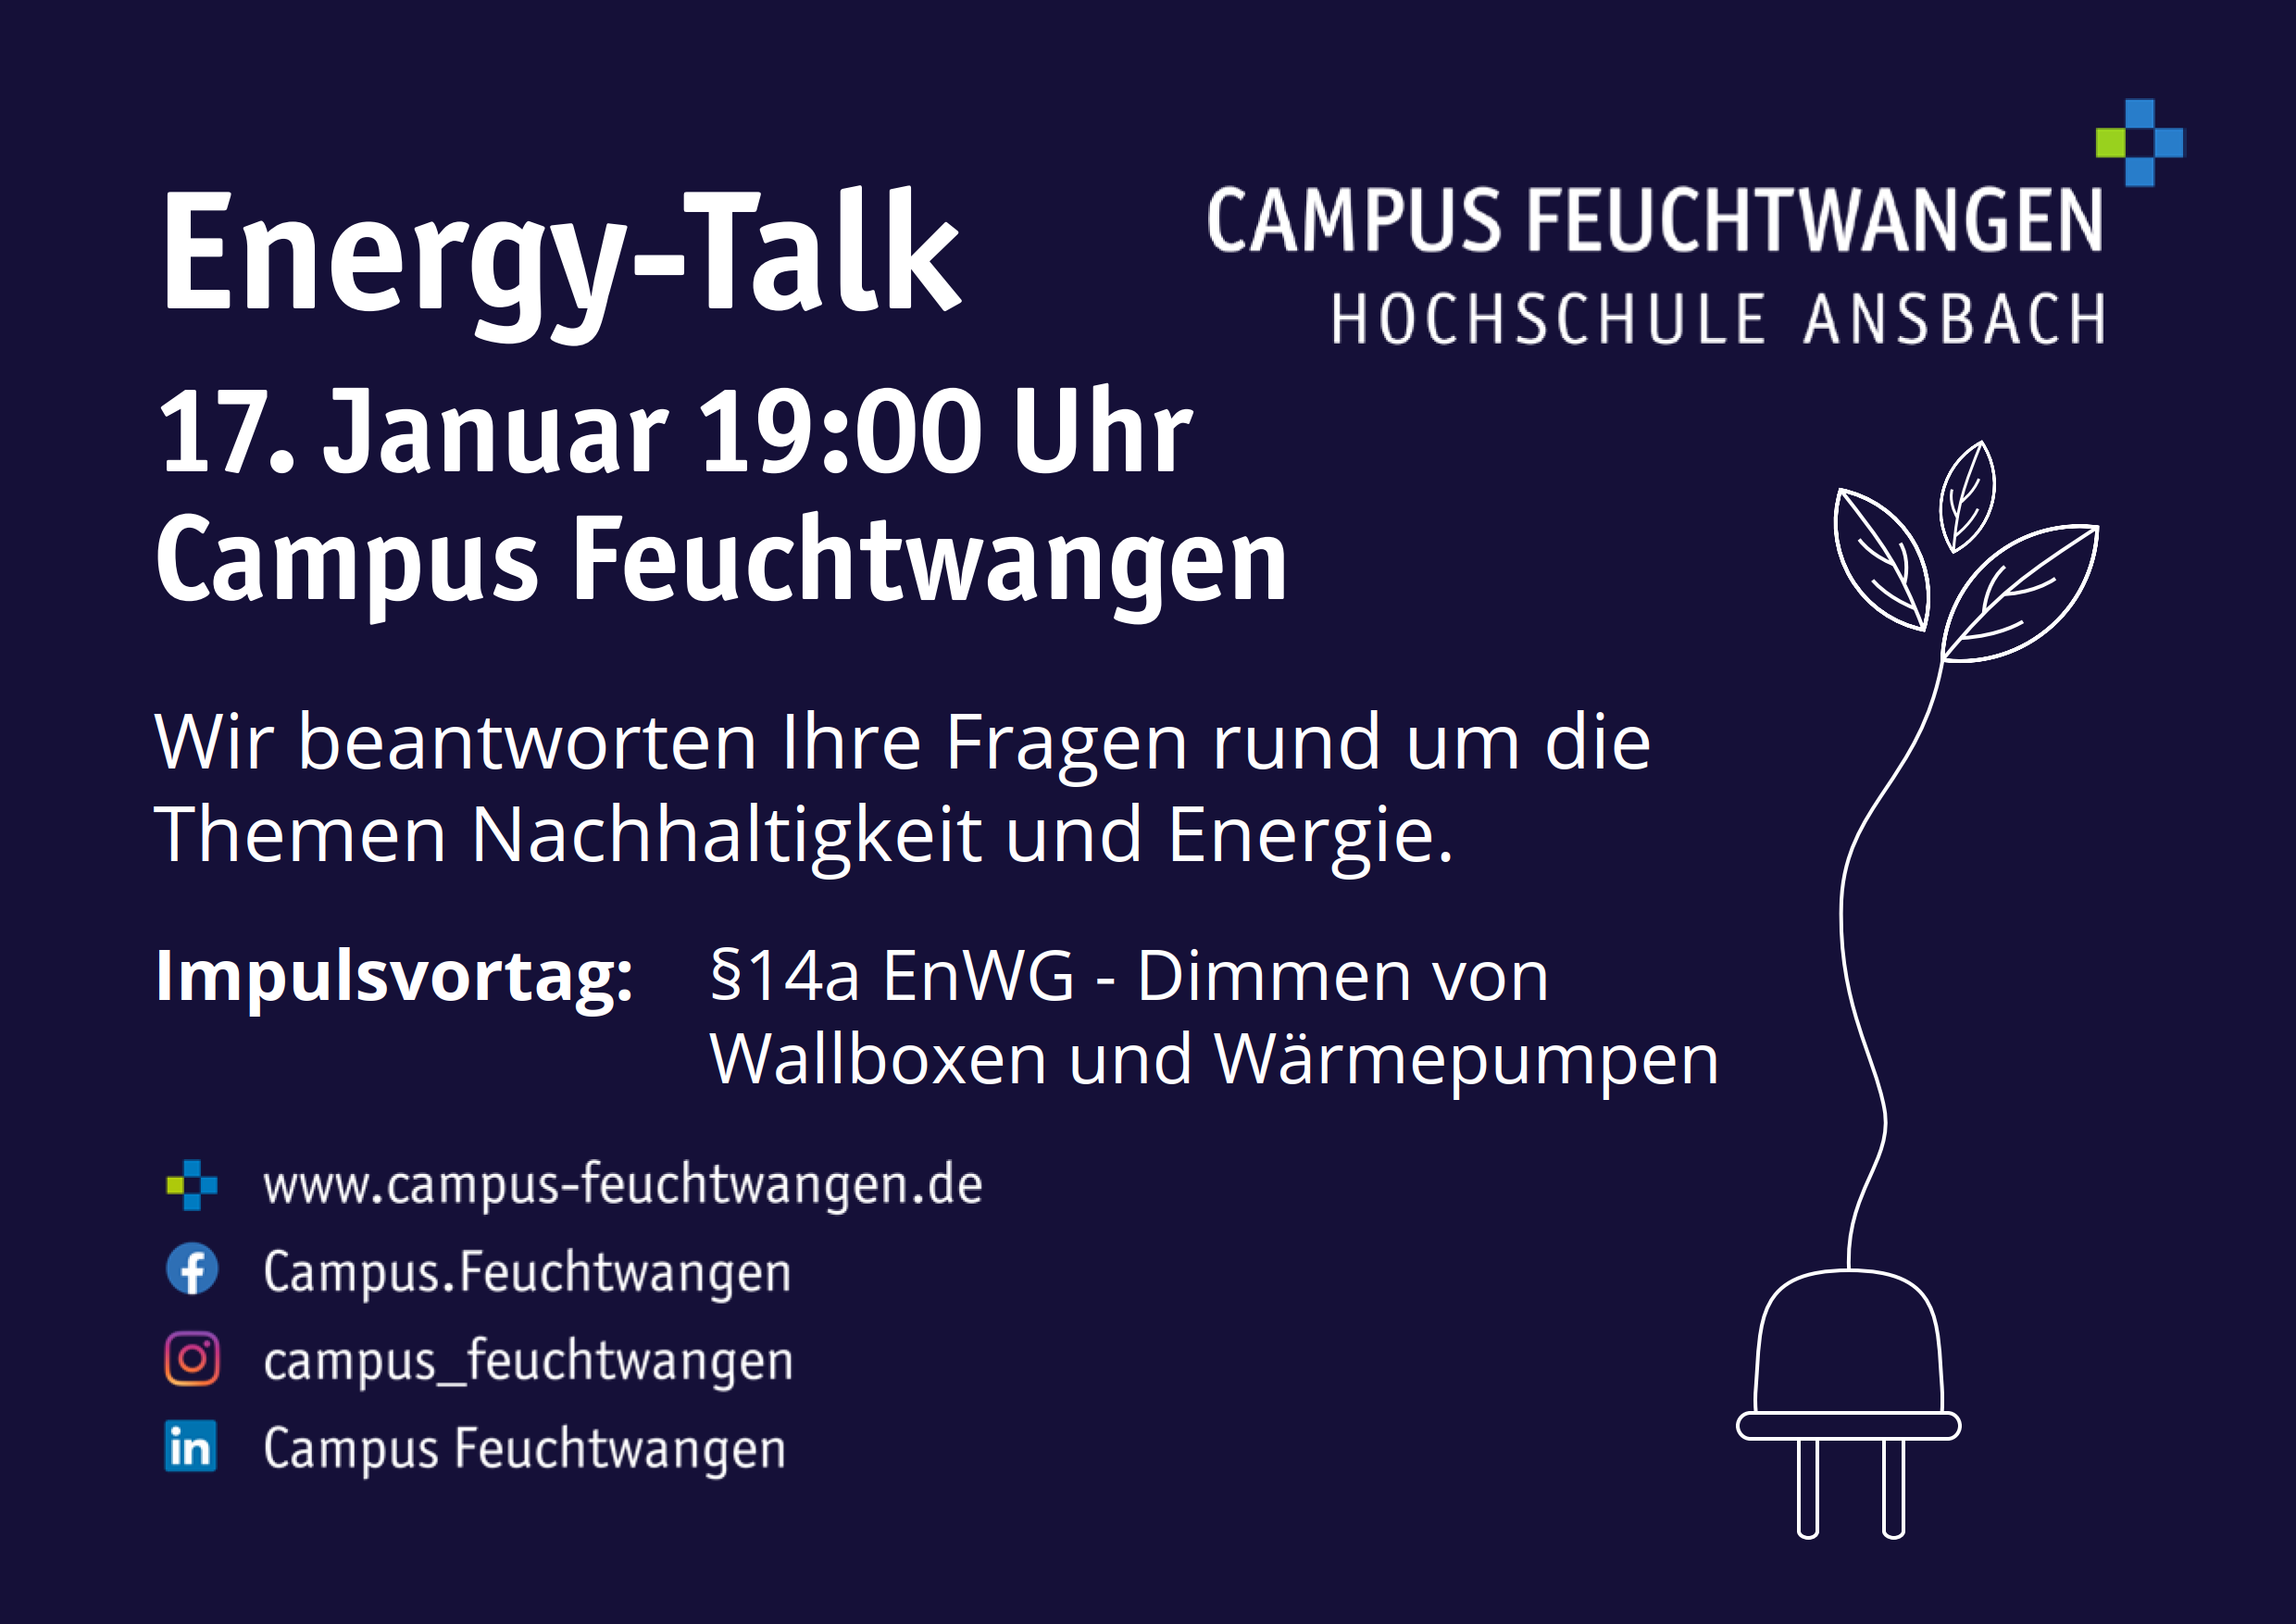 Info Flyer für den nächsten Energy Talk. Illustrationen und des Datum 17.01.2023 sind zu erkennen. Stattfinden wird der Energy Talk am Campus Feuchtwangen